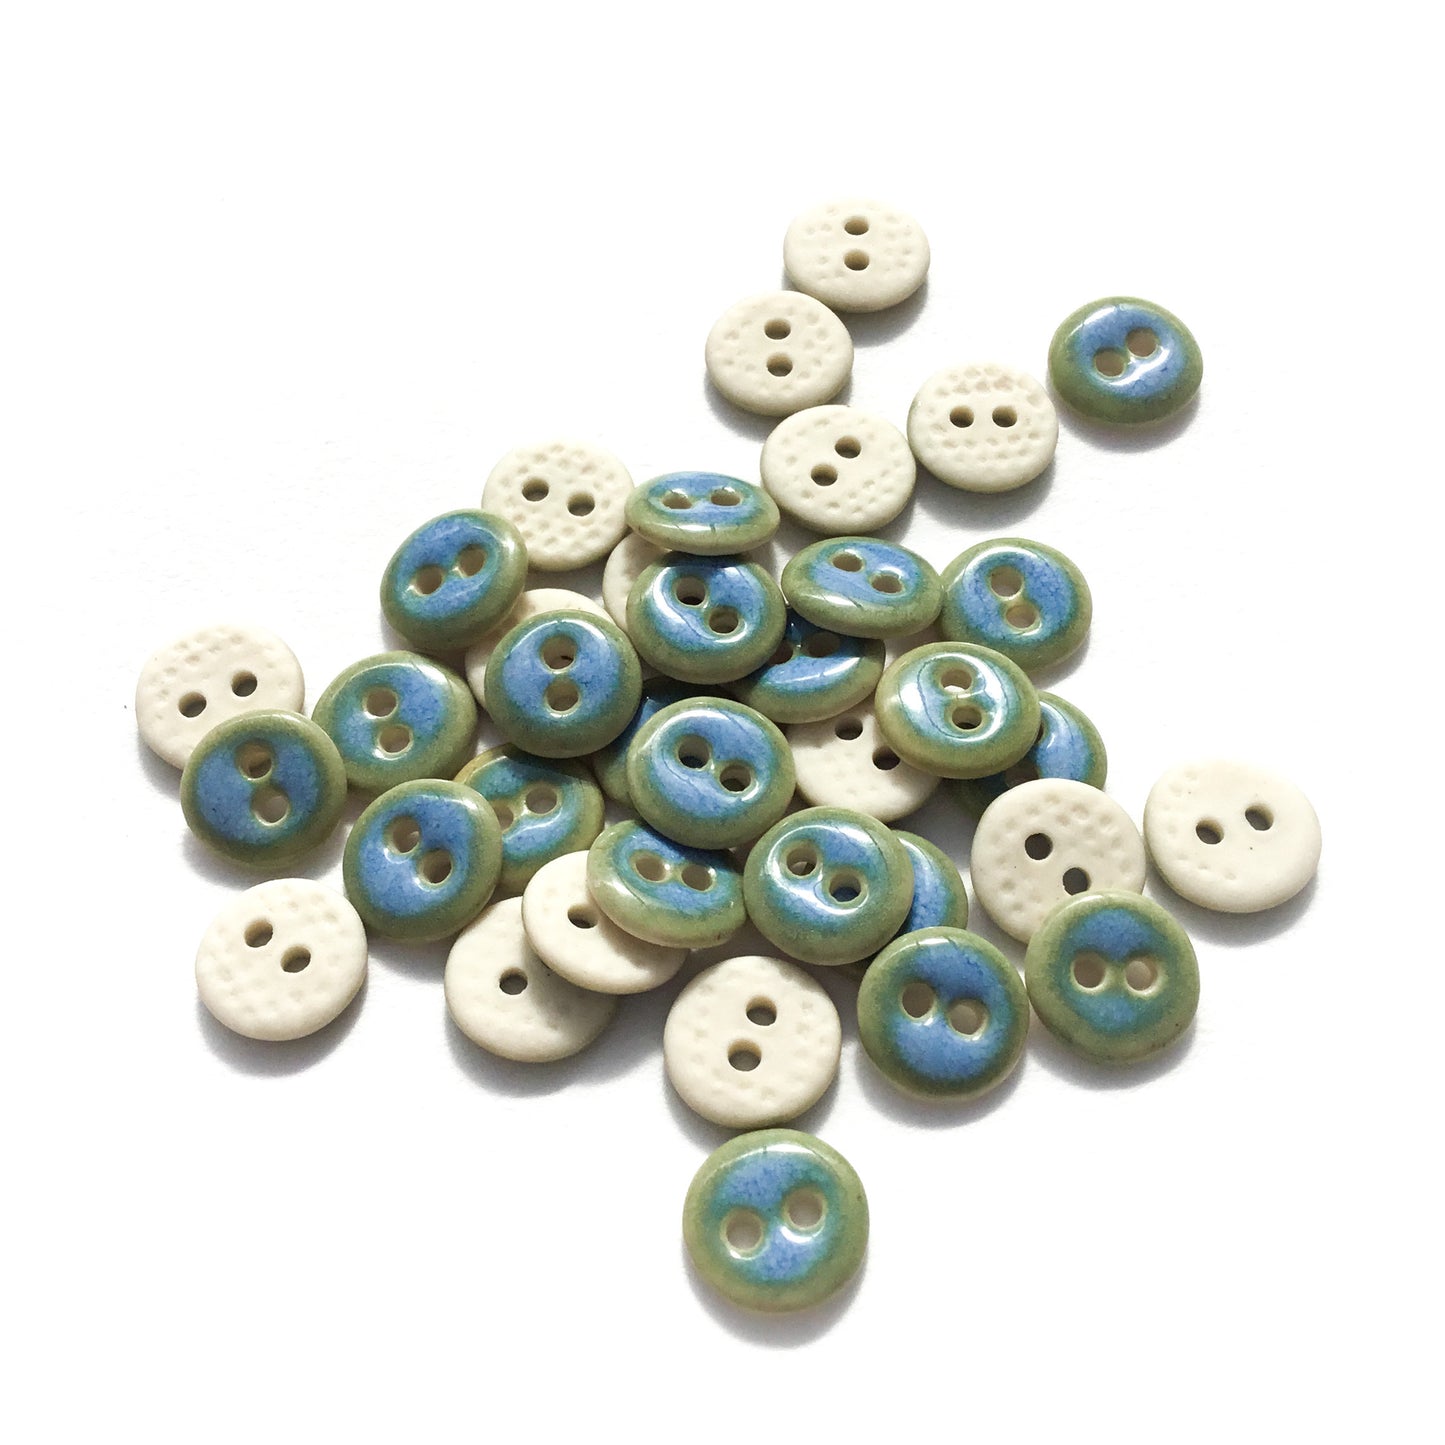 Arctic Blue Porcelain Buttons  7/16"